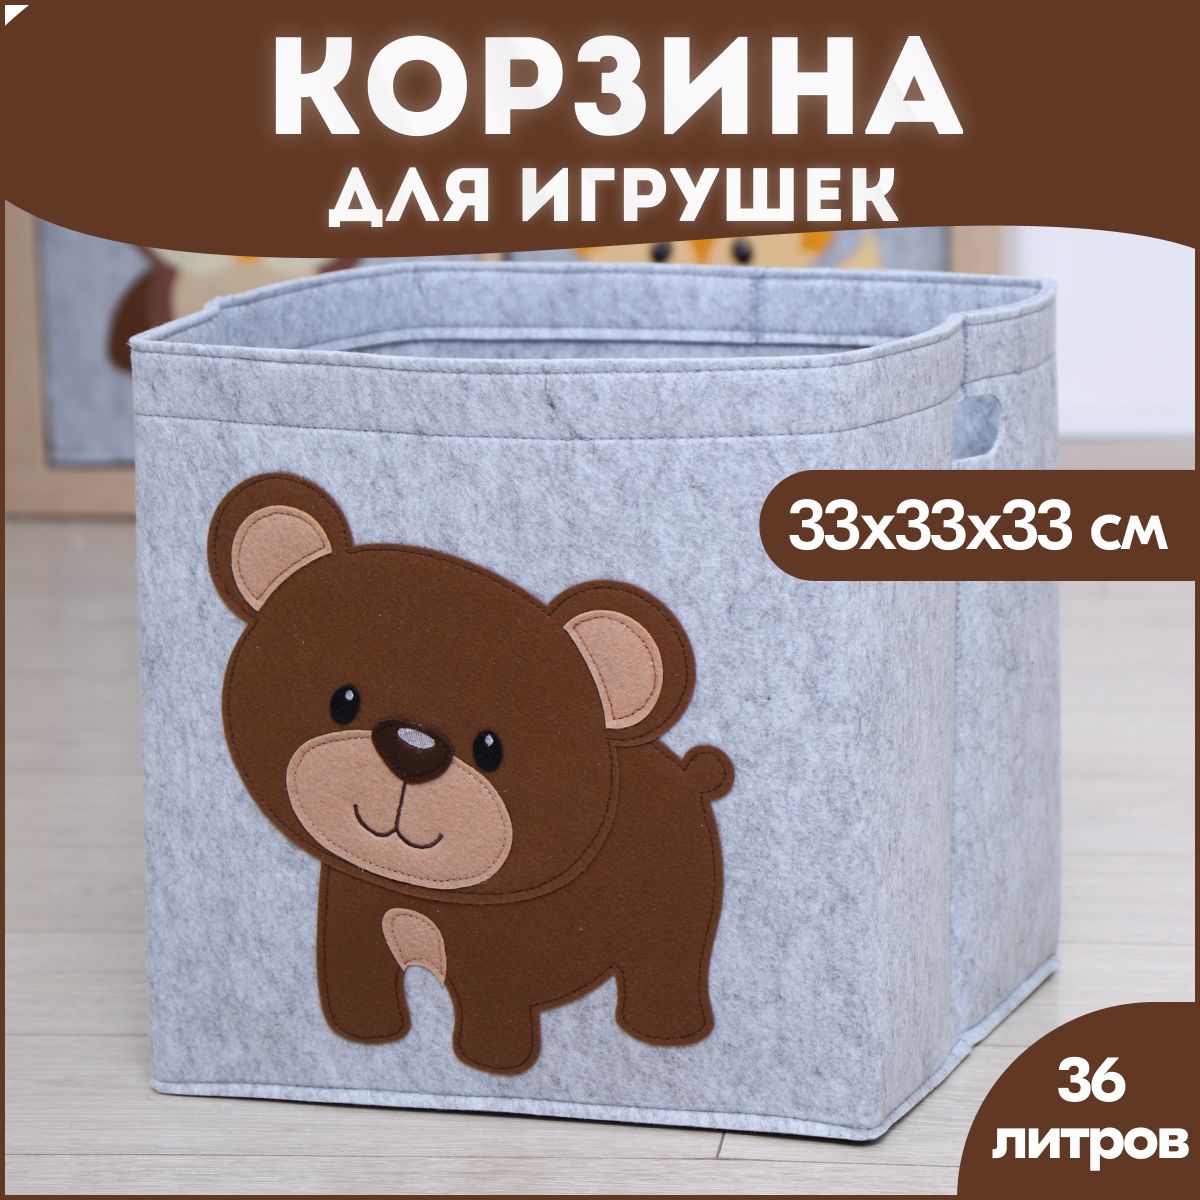 Корзина короб для хранения игрушек HappySava Медведь объем 36 литров размер 33x33x33см disney короб для игрушек феи tb 83392 fr